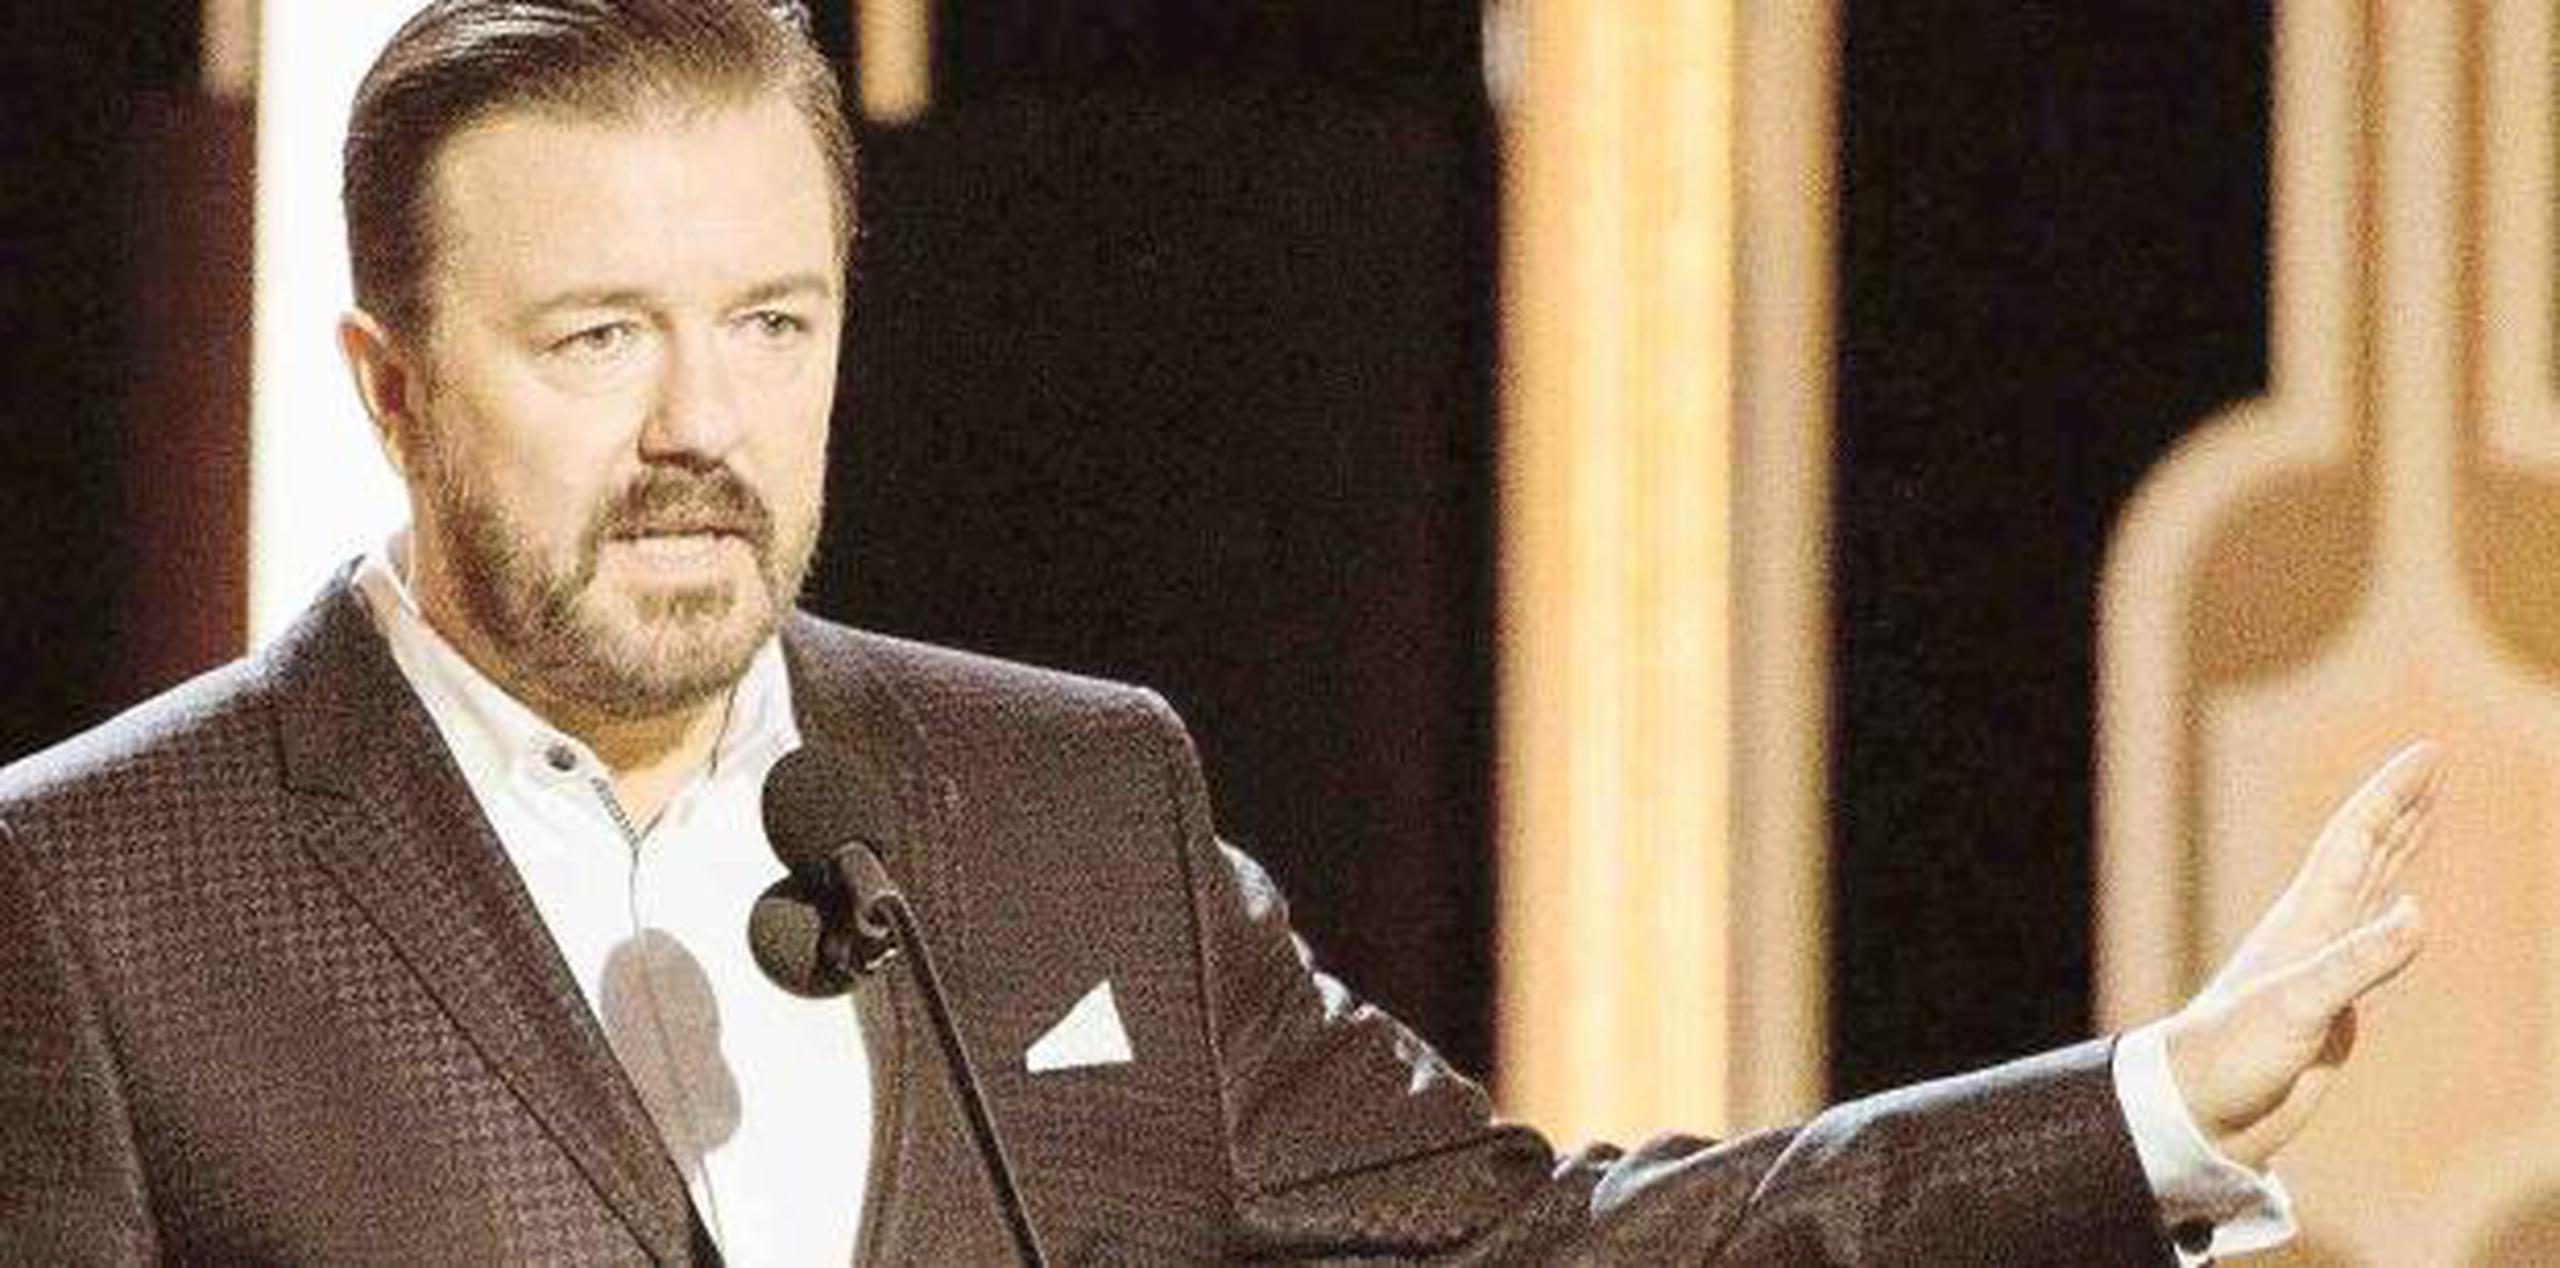 Ricky Gervais repetira como animador de la gala. (Archivo)